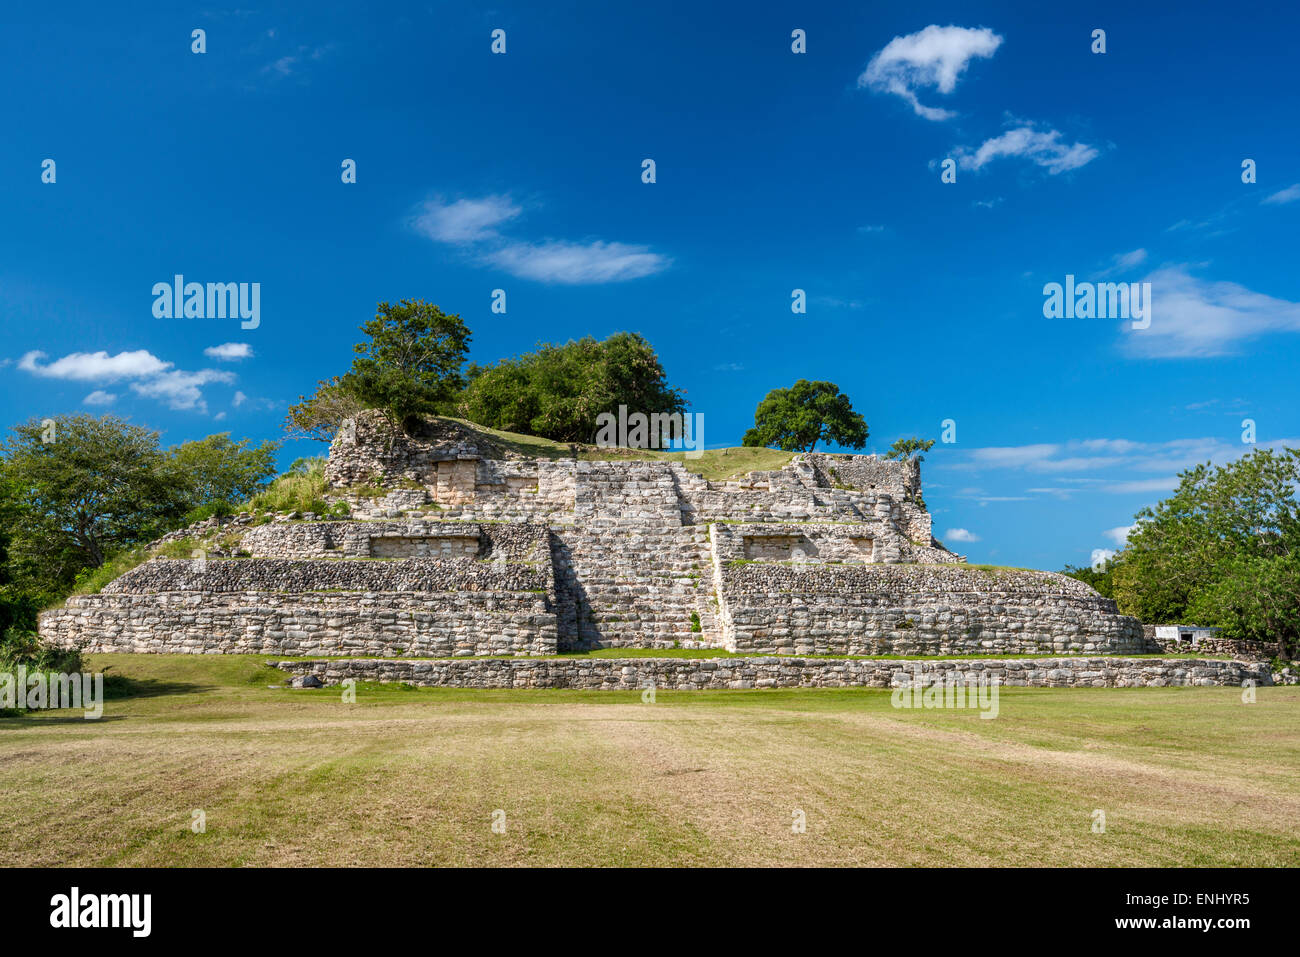 Maya pyramid ruins at Ake, Yucatan, Mexico Stock Photo